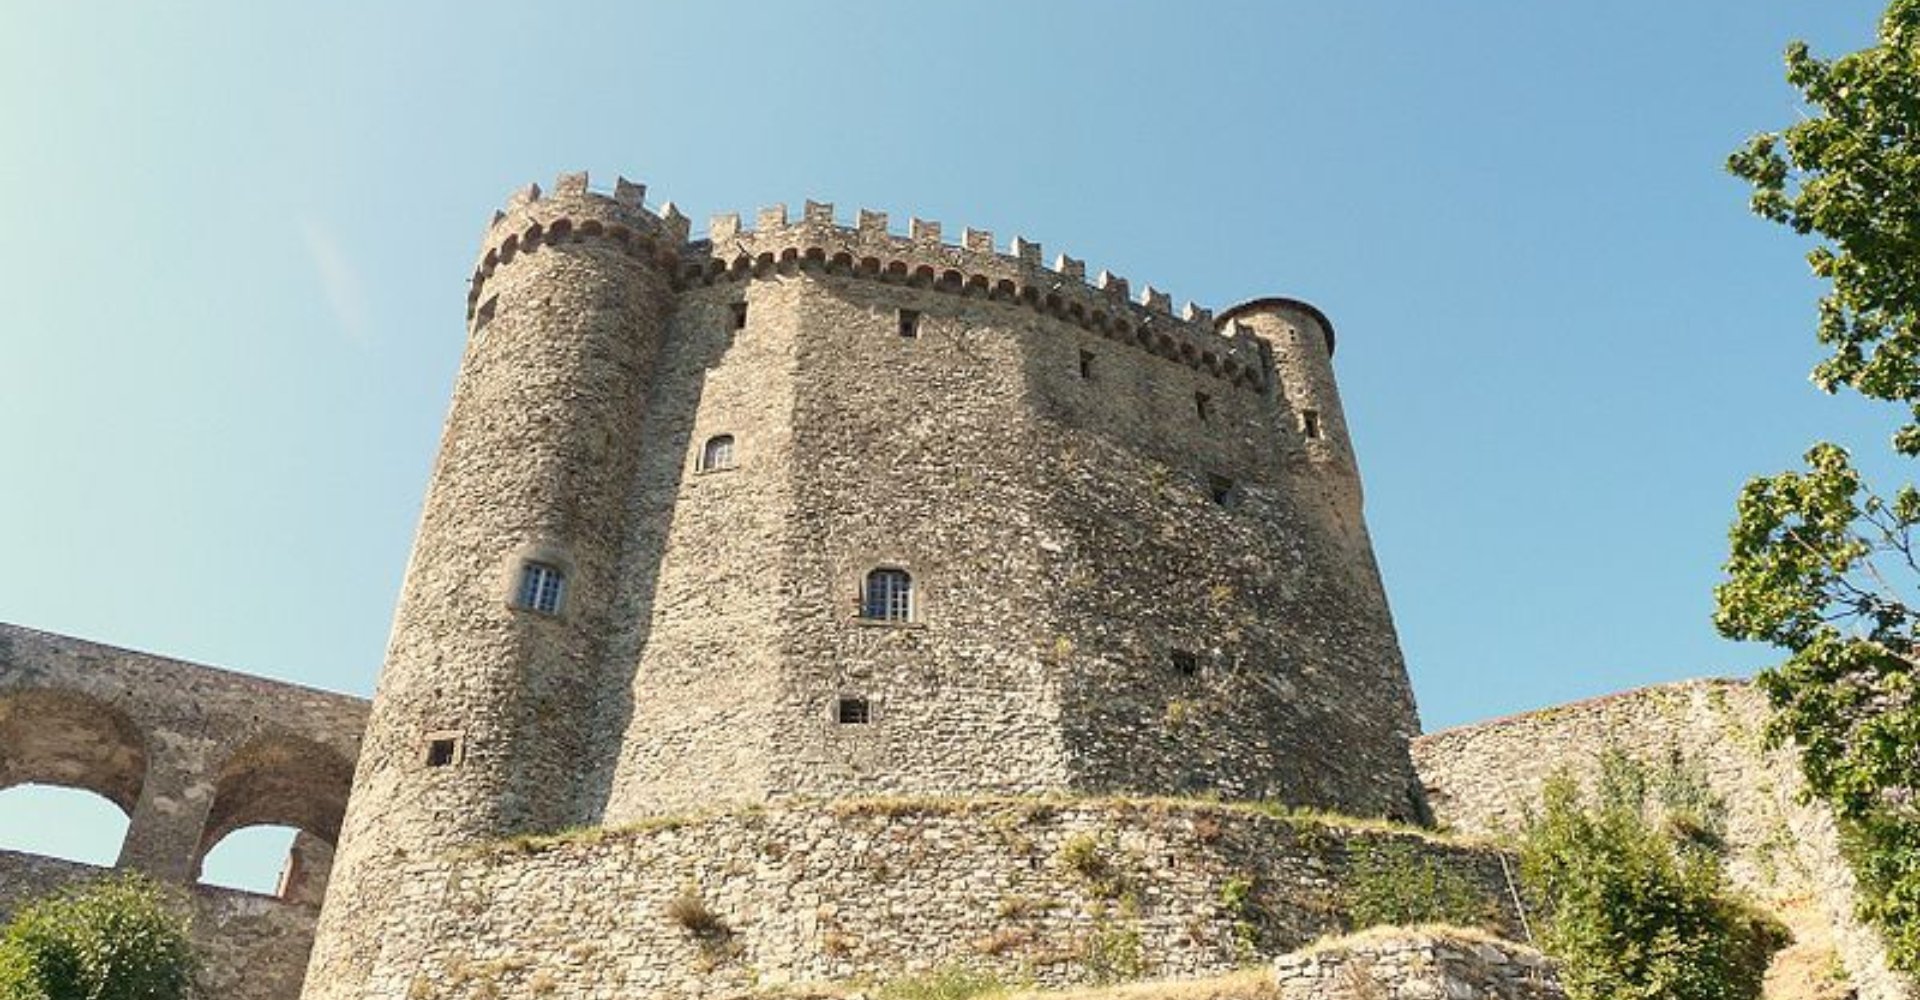 Fosdinovo Castle